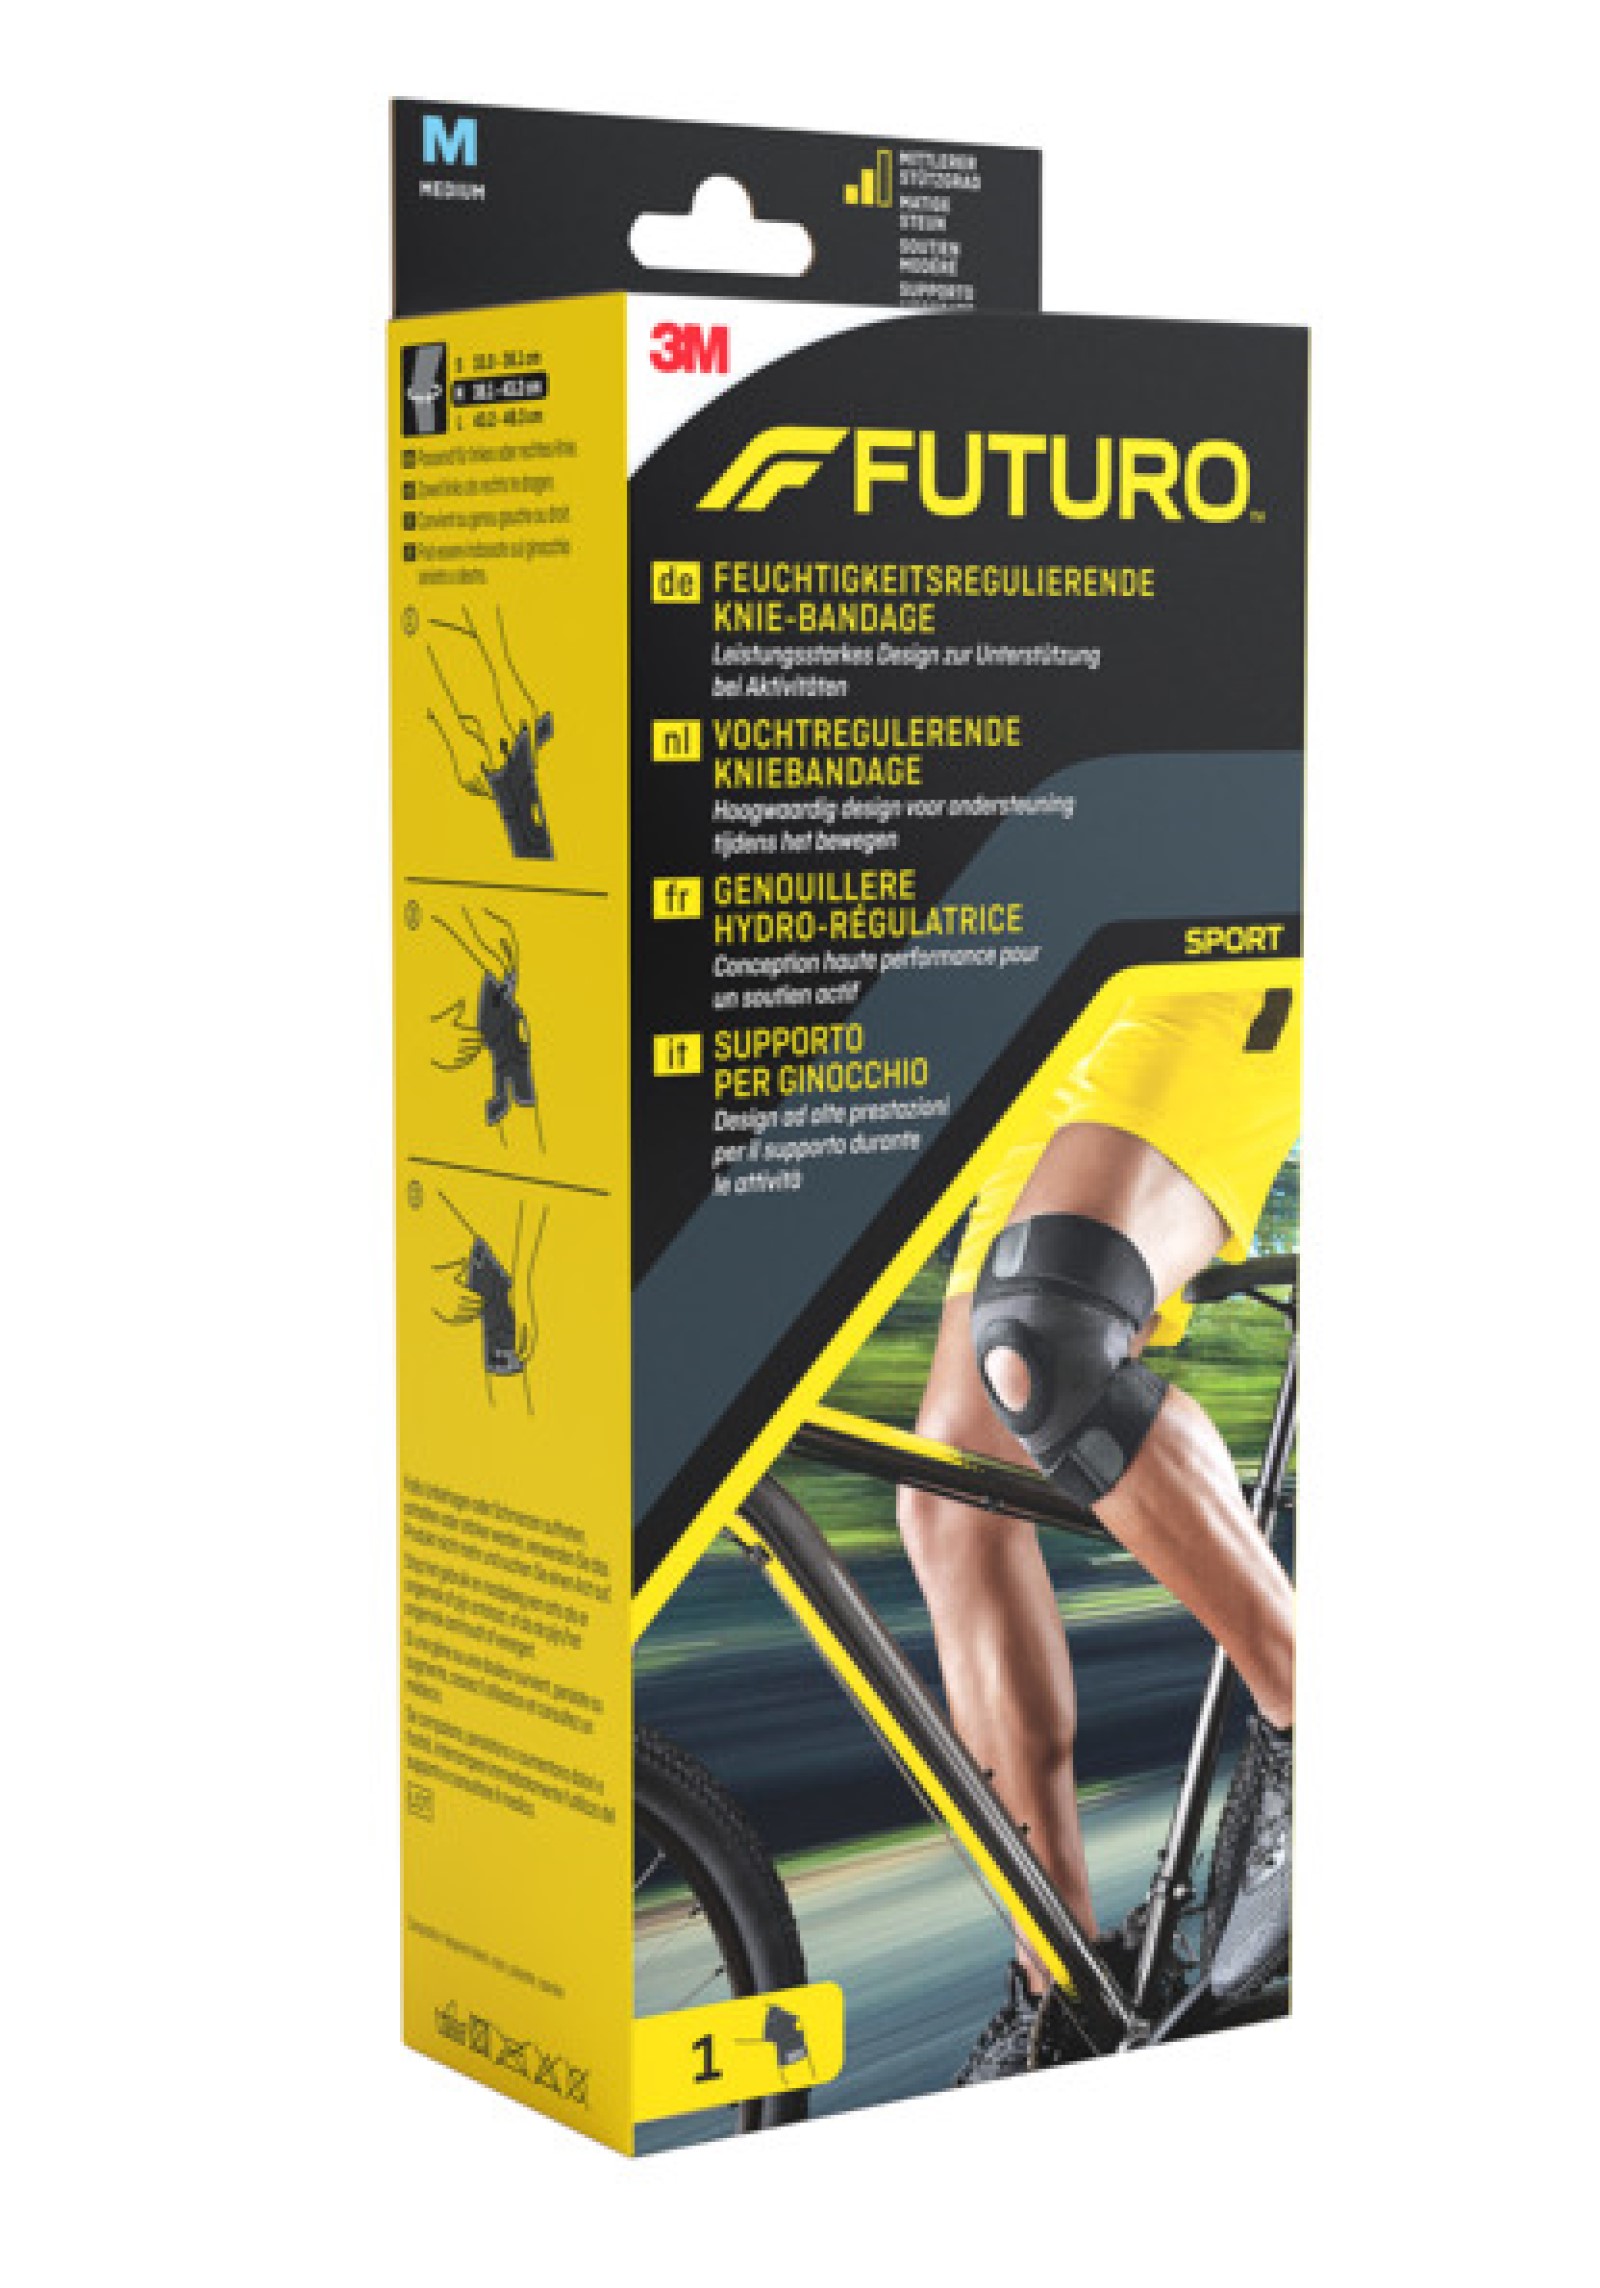 FUTURO™ Feuchtigkeitsregulierende Knie-Bandage 45696, M SPORT (38.1 - 43.2 cm)